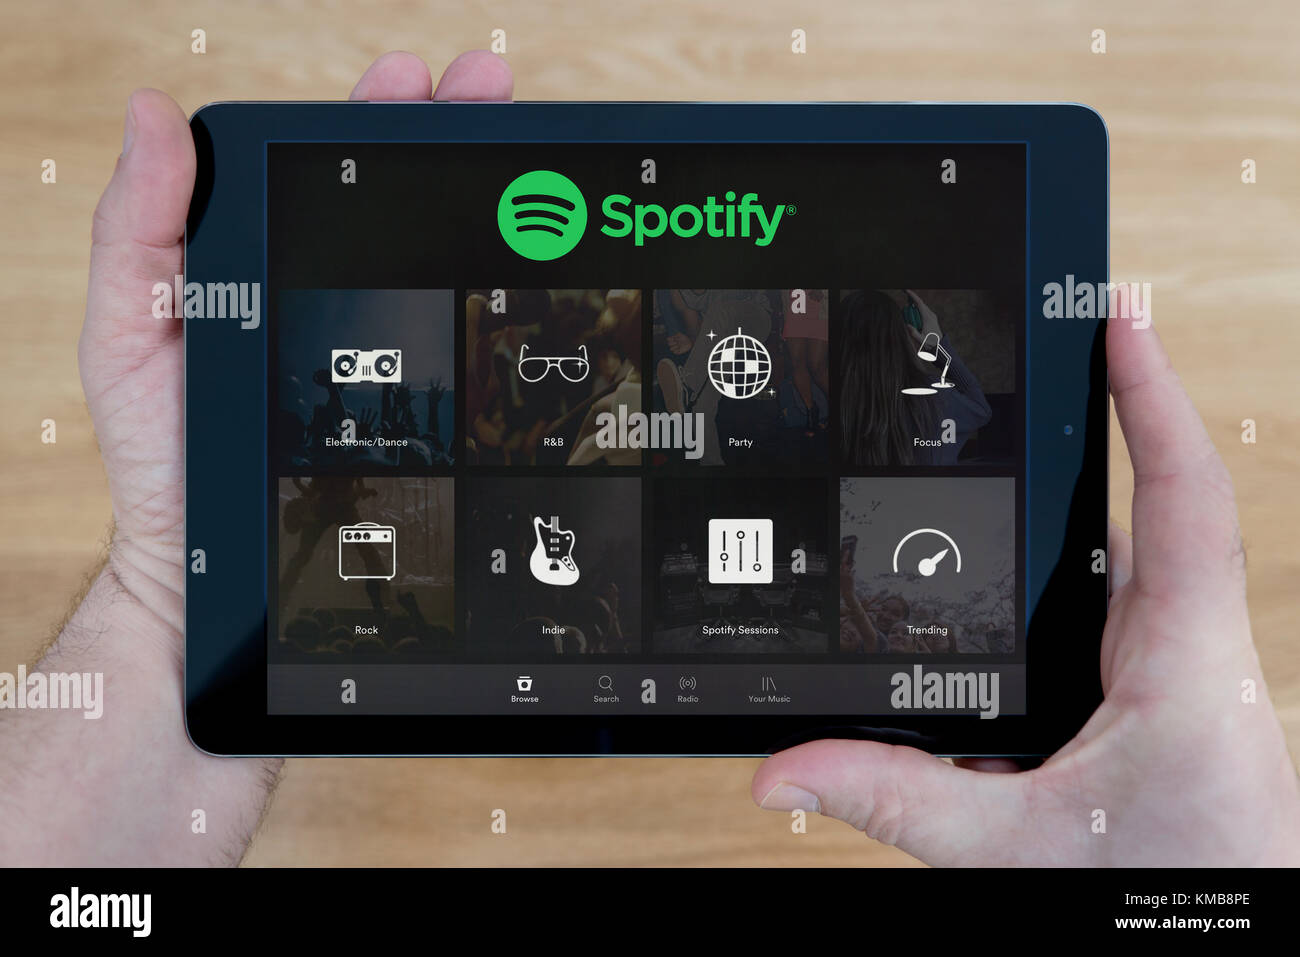 Un homme regarde l'application Spotify sur son iPad tablet device, tourné contre une table en bois page contexte (usage éditorial uniquement) Banque D'Images